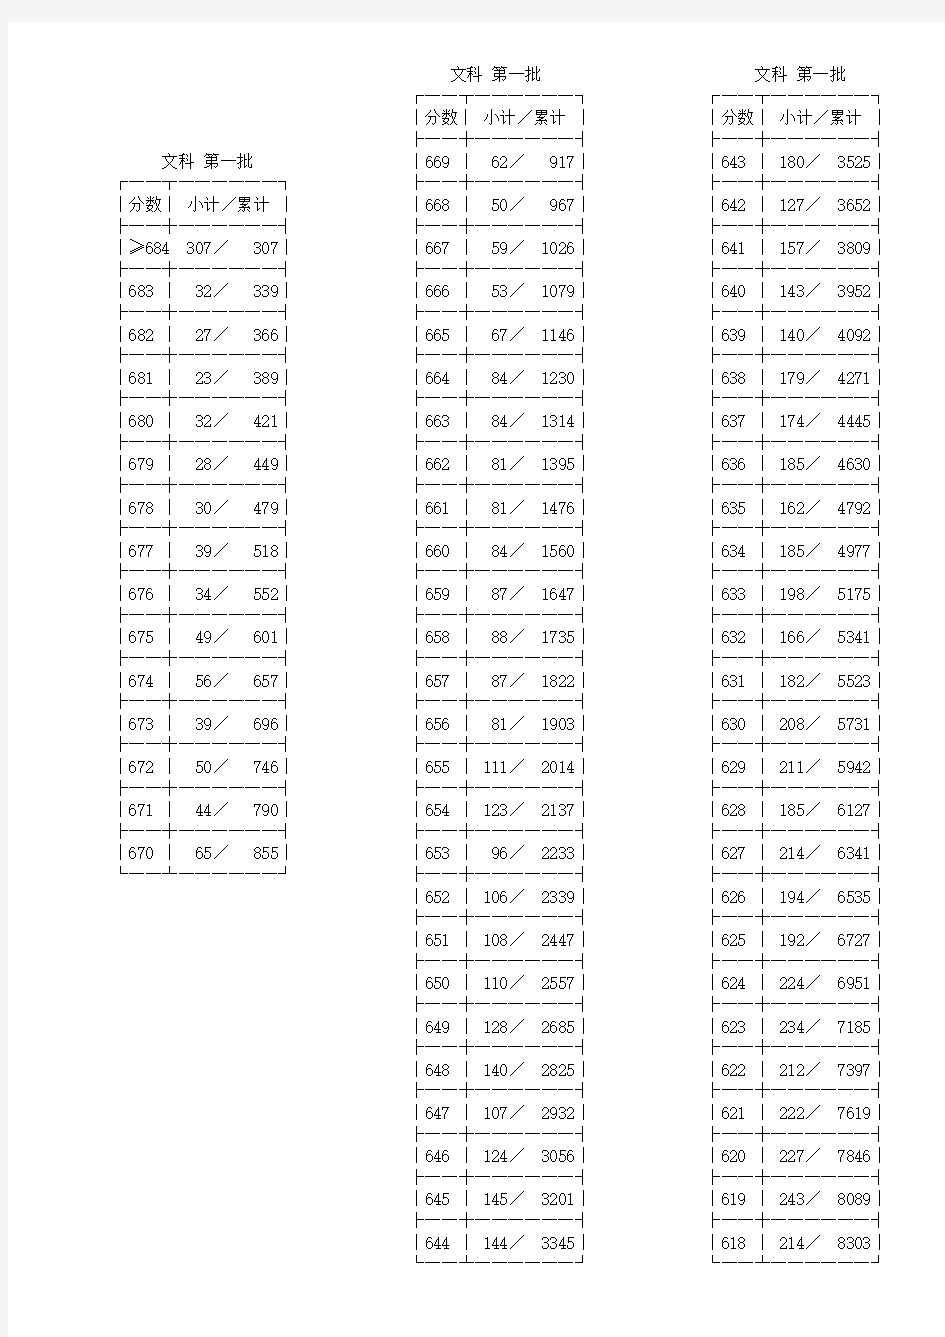 2013年浙江普通高考文理科第一批成绩分段表 (一分一档表)